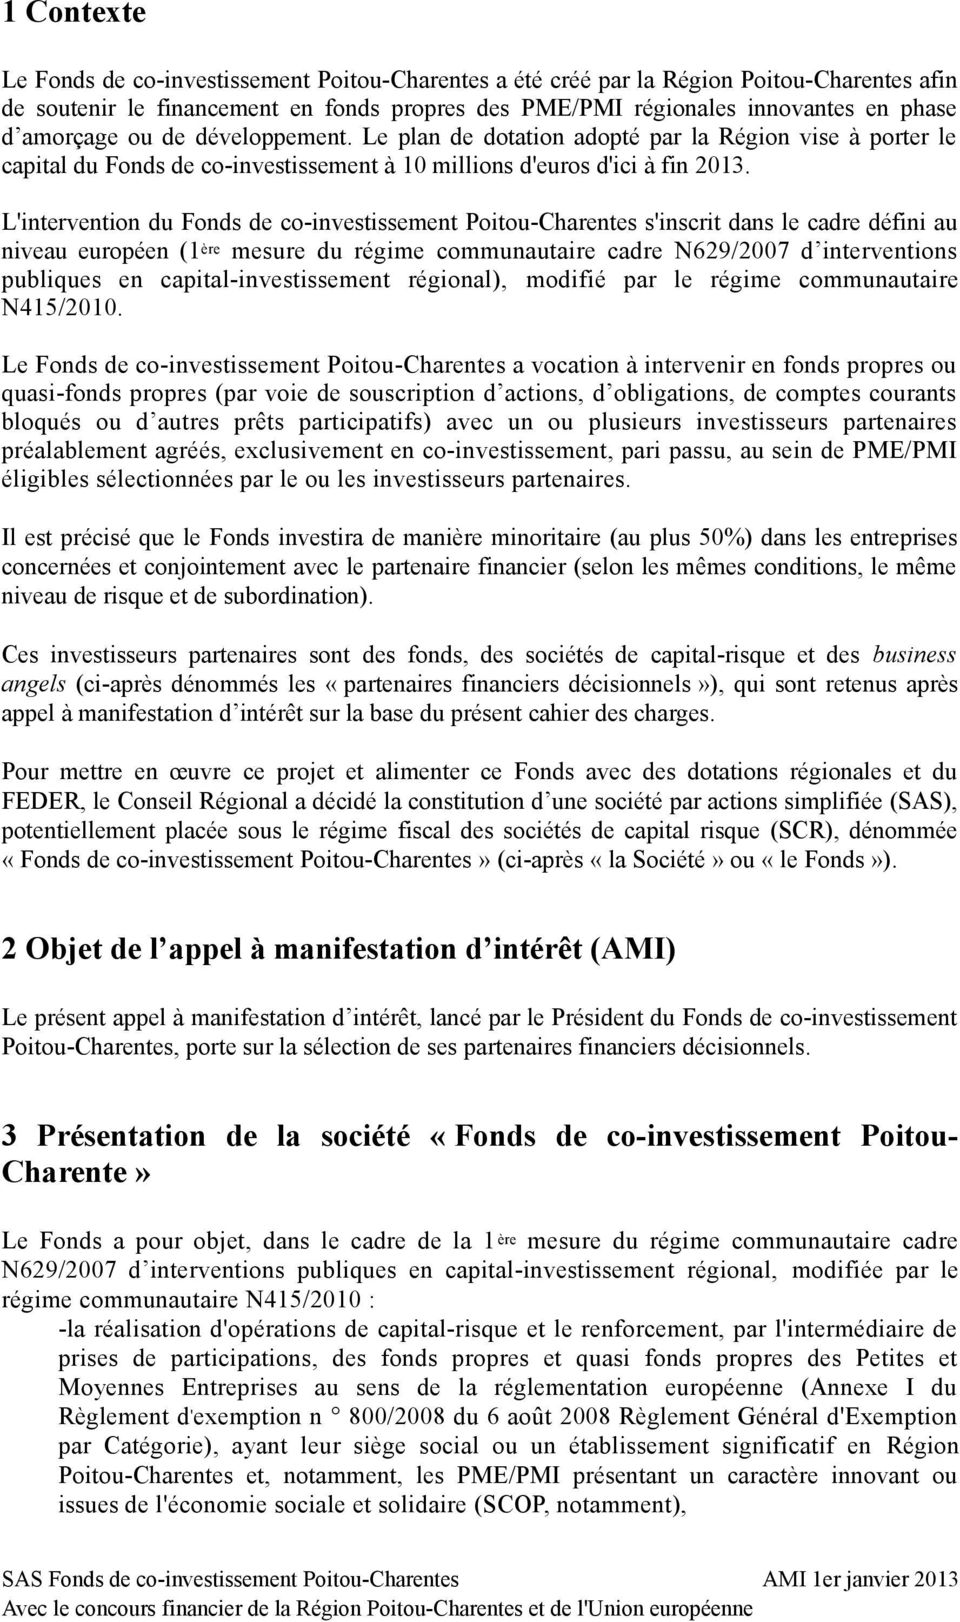 L'intervention du Fonds de co-investissement Poitou-Charentes s'inscrit dans le cadre défini au niveau européen (1 ère mesure du régime communautaire cadre N629/2007 d interventions publiques en